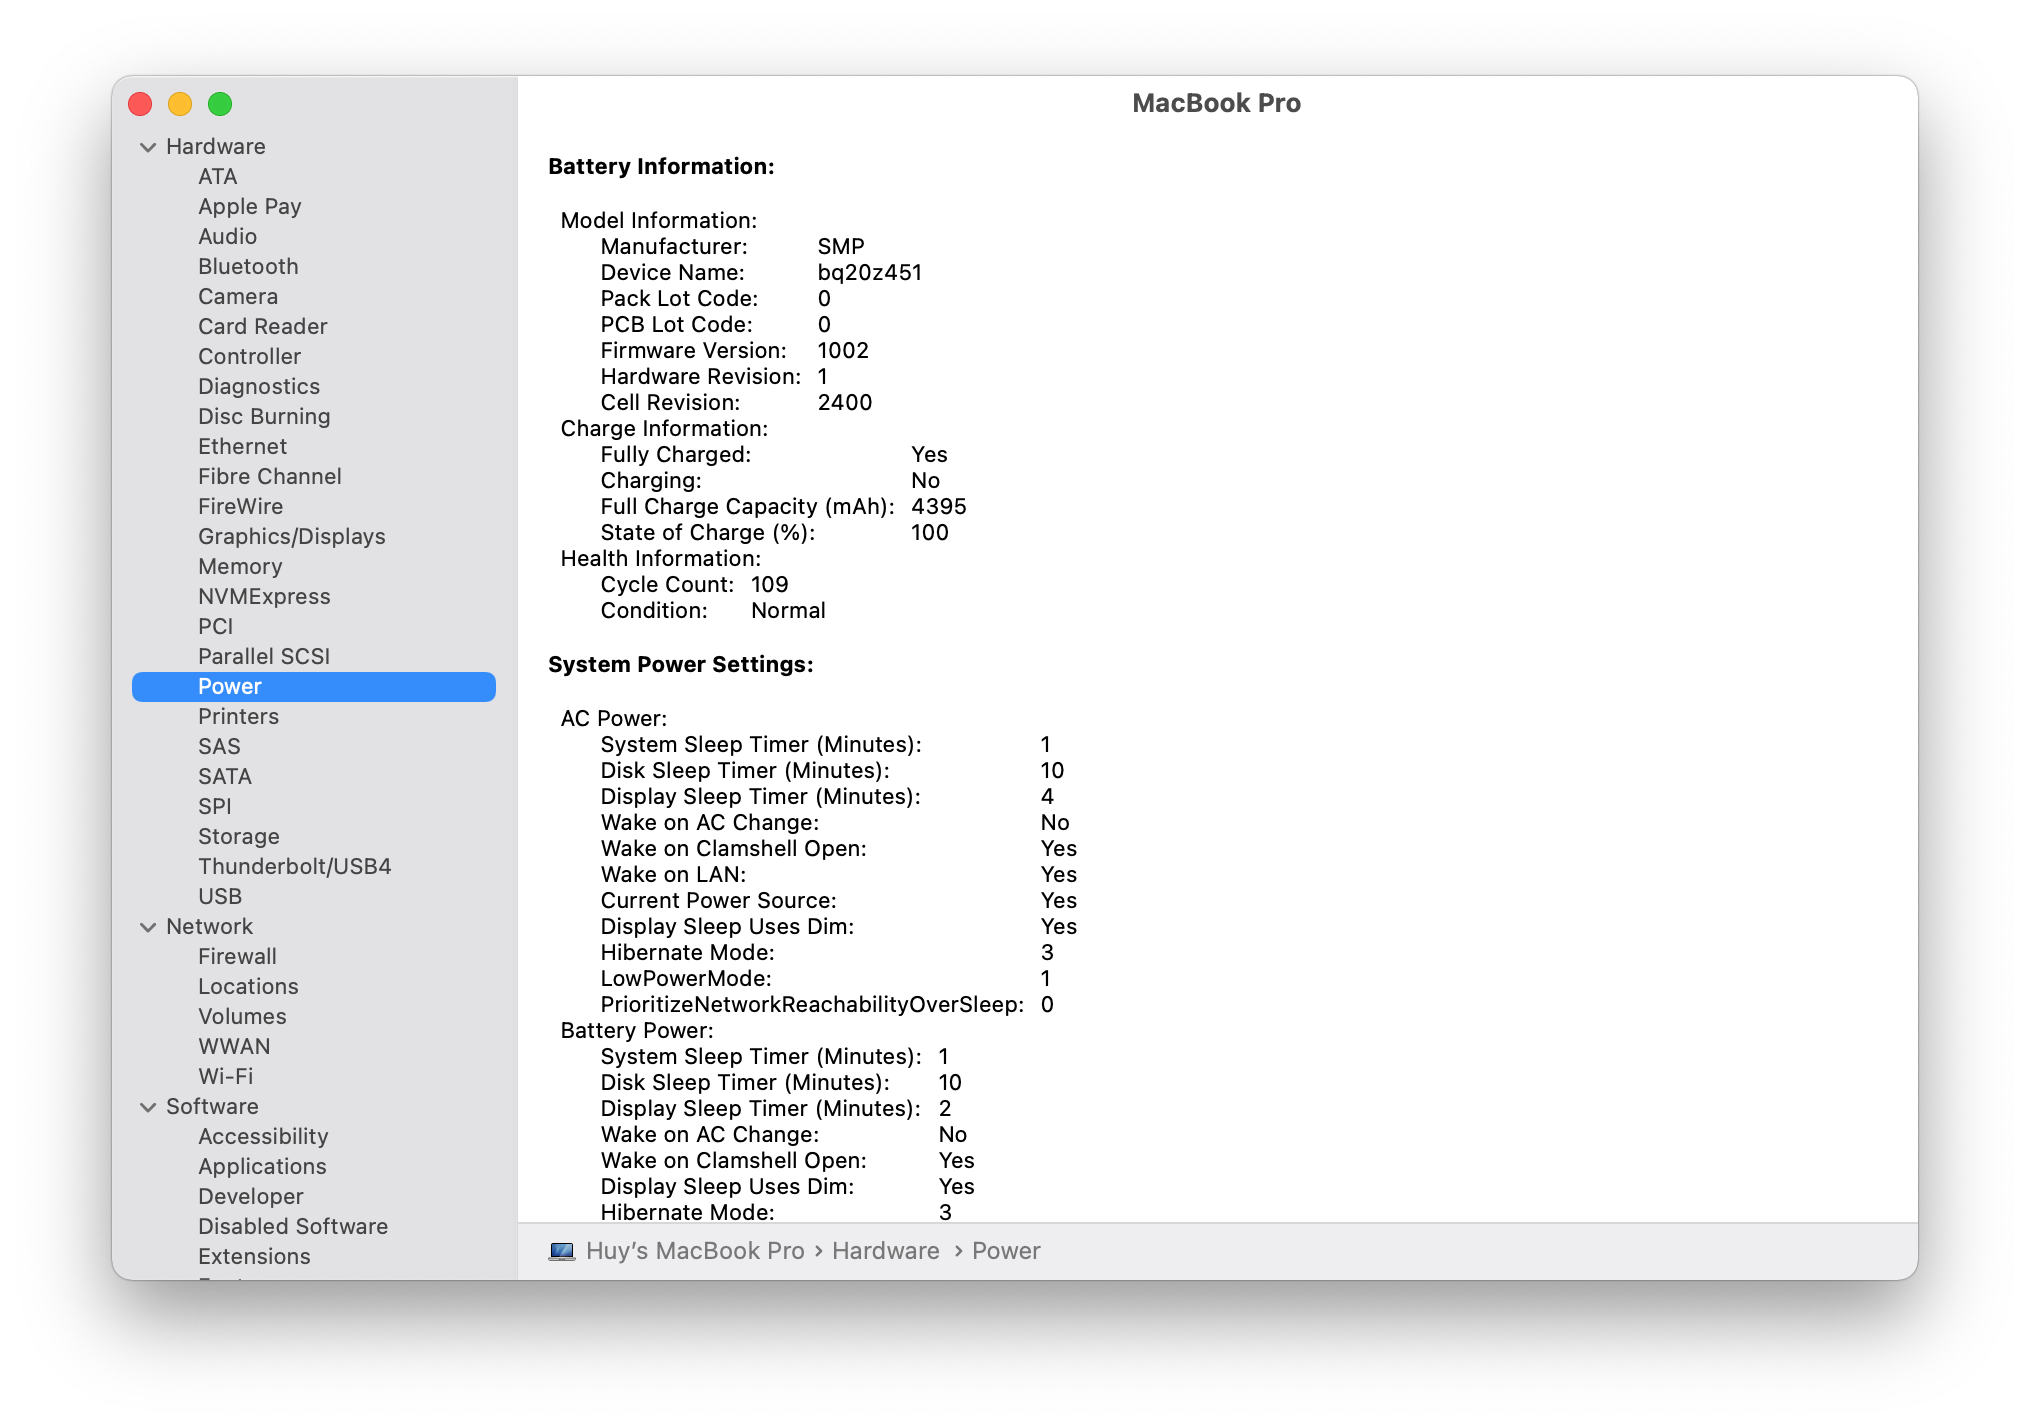 macOS cơ bản: Một số tuỳ chọn ẩn đi kèm phím Option giúp sử dụng máy Mac hiệu quả hơn